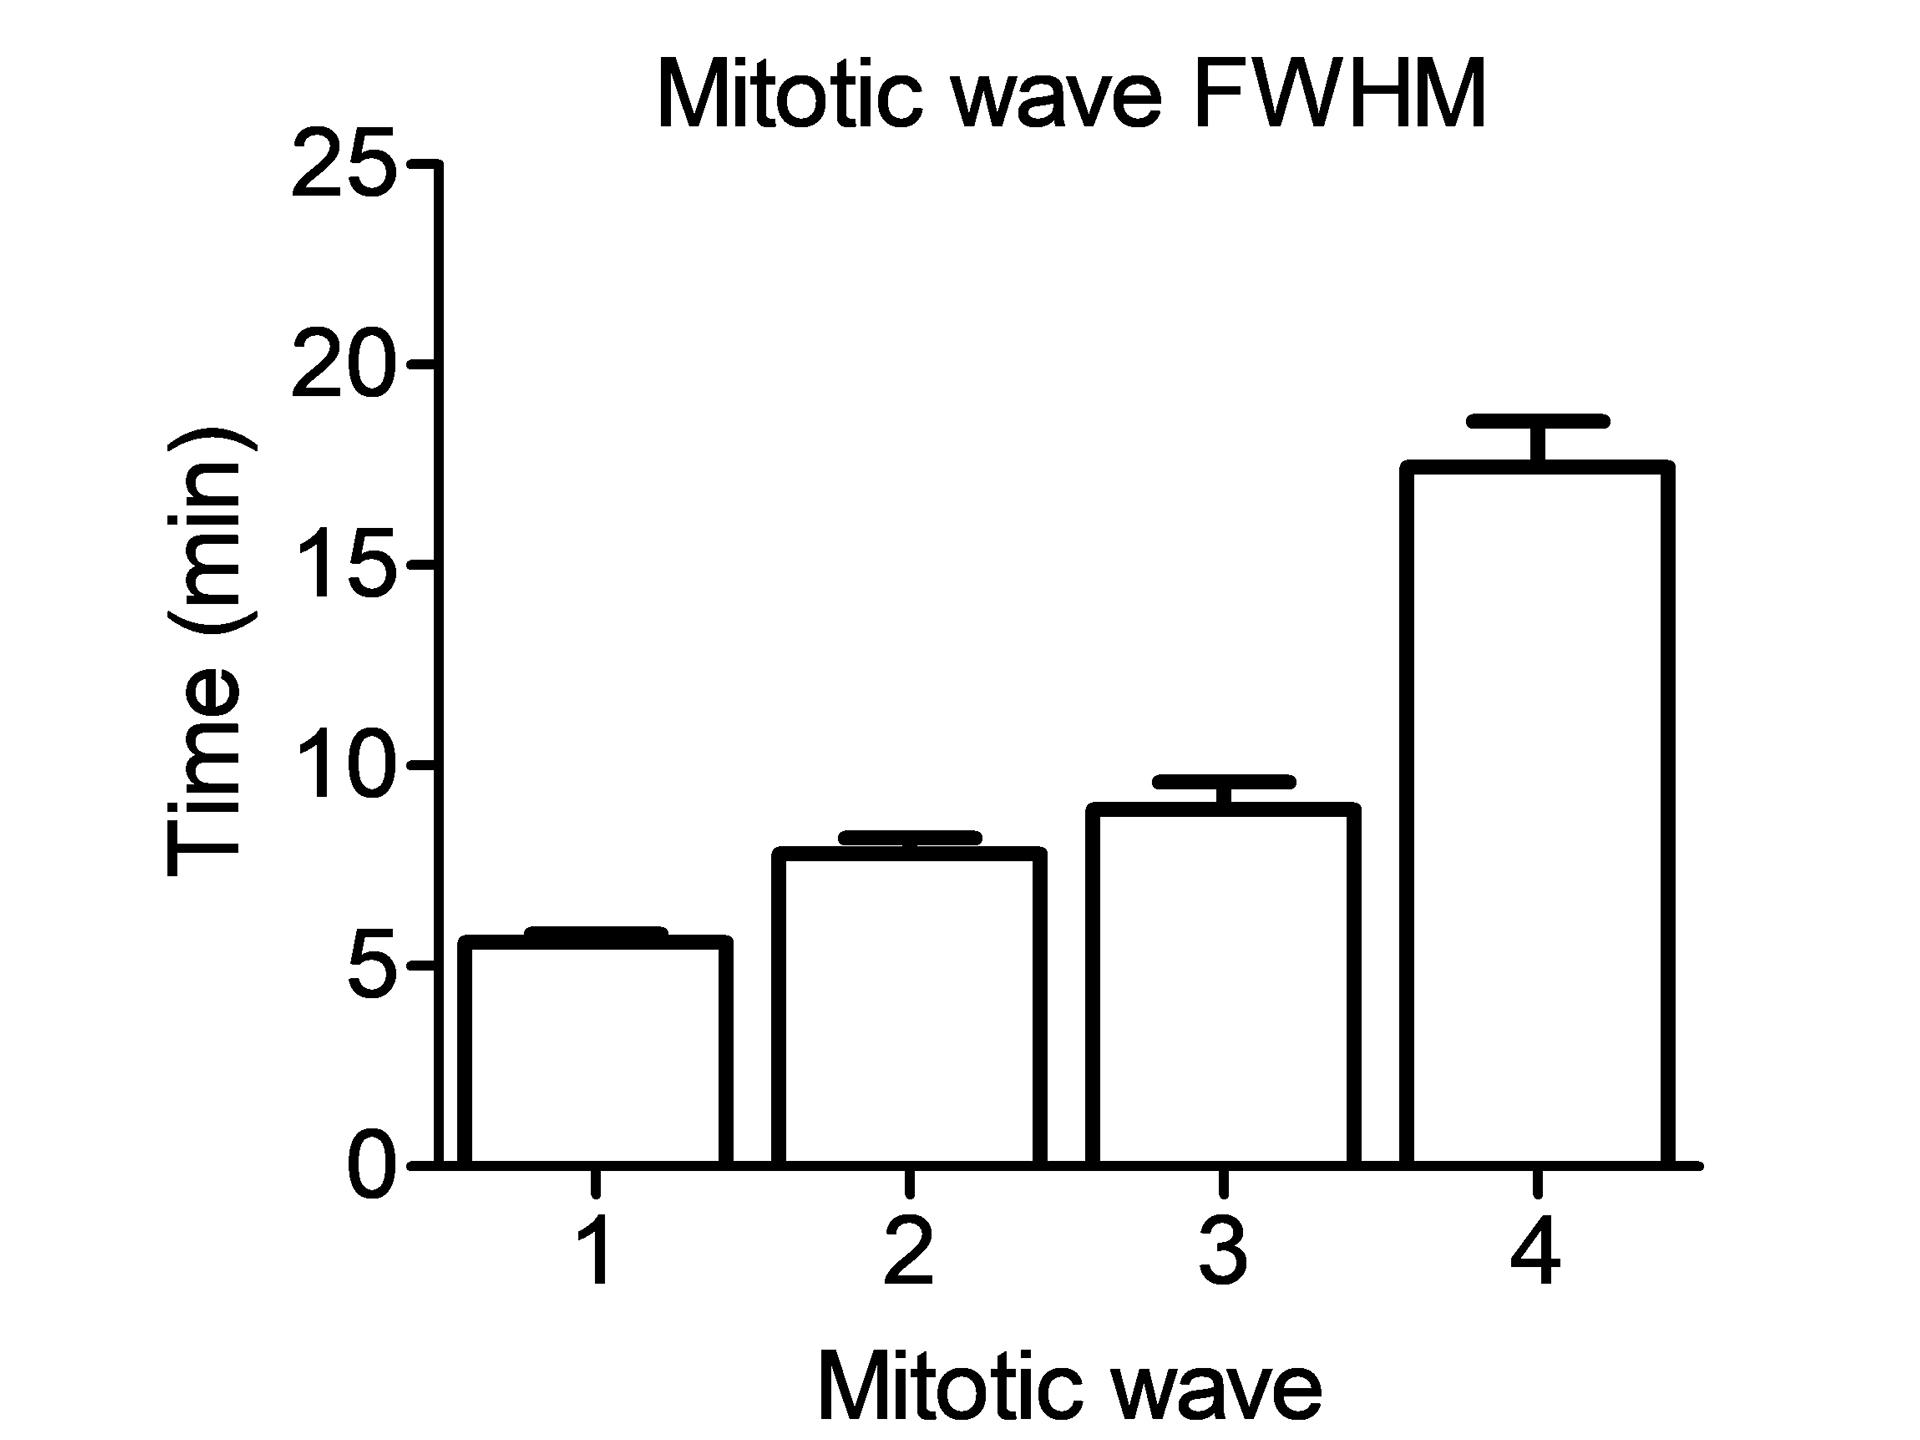 Figure 3C: Full Width at Half Maximum (FWHM) measurement for mitotic waves.